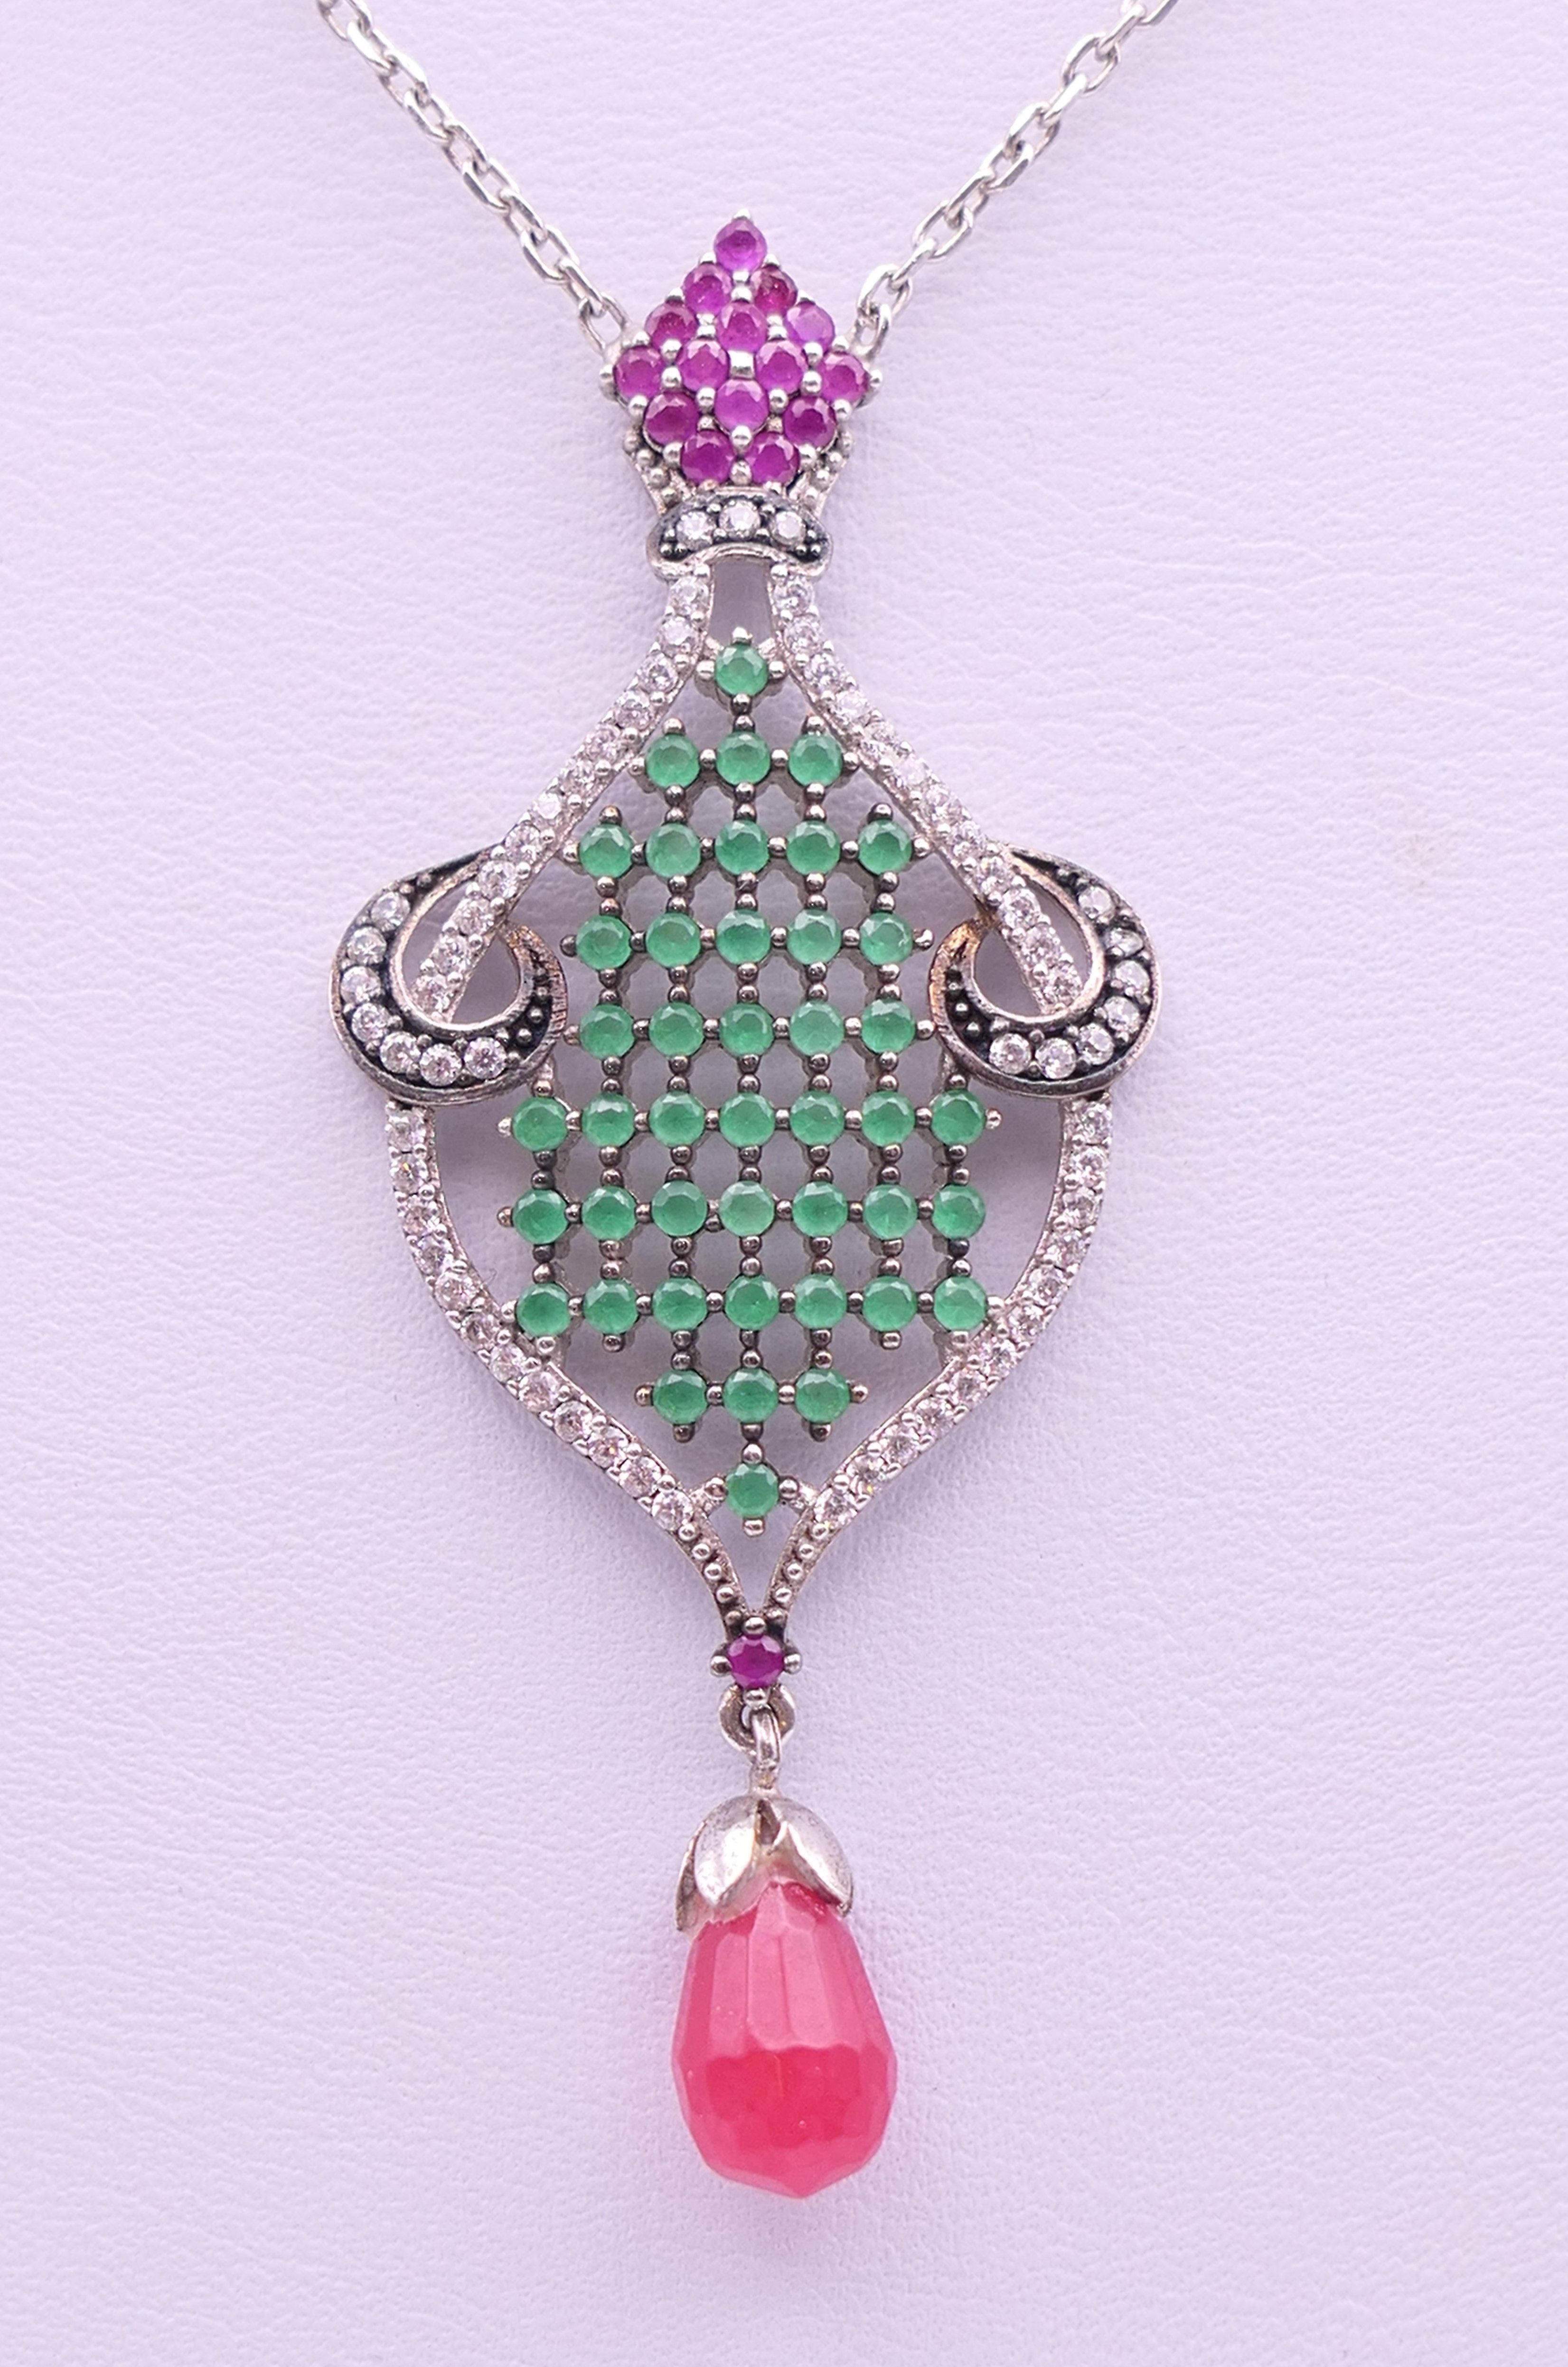 An Art Nouveau style drop pendant on a silver chain. Chain 46 cm long, pendant 5.5 cm high. - Image 3 of 7